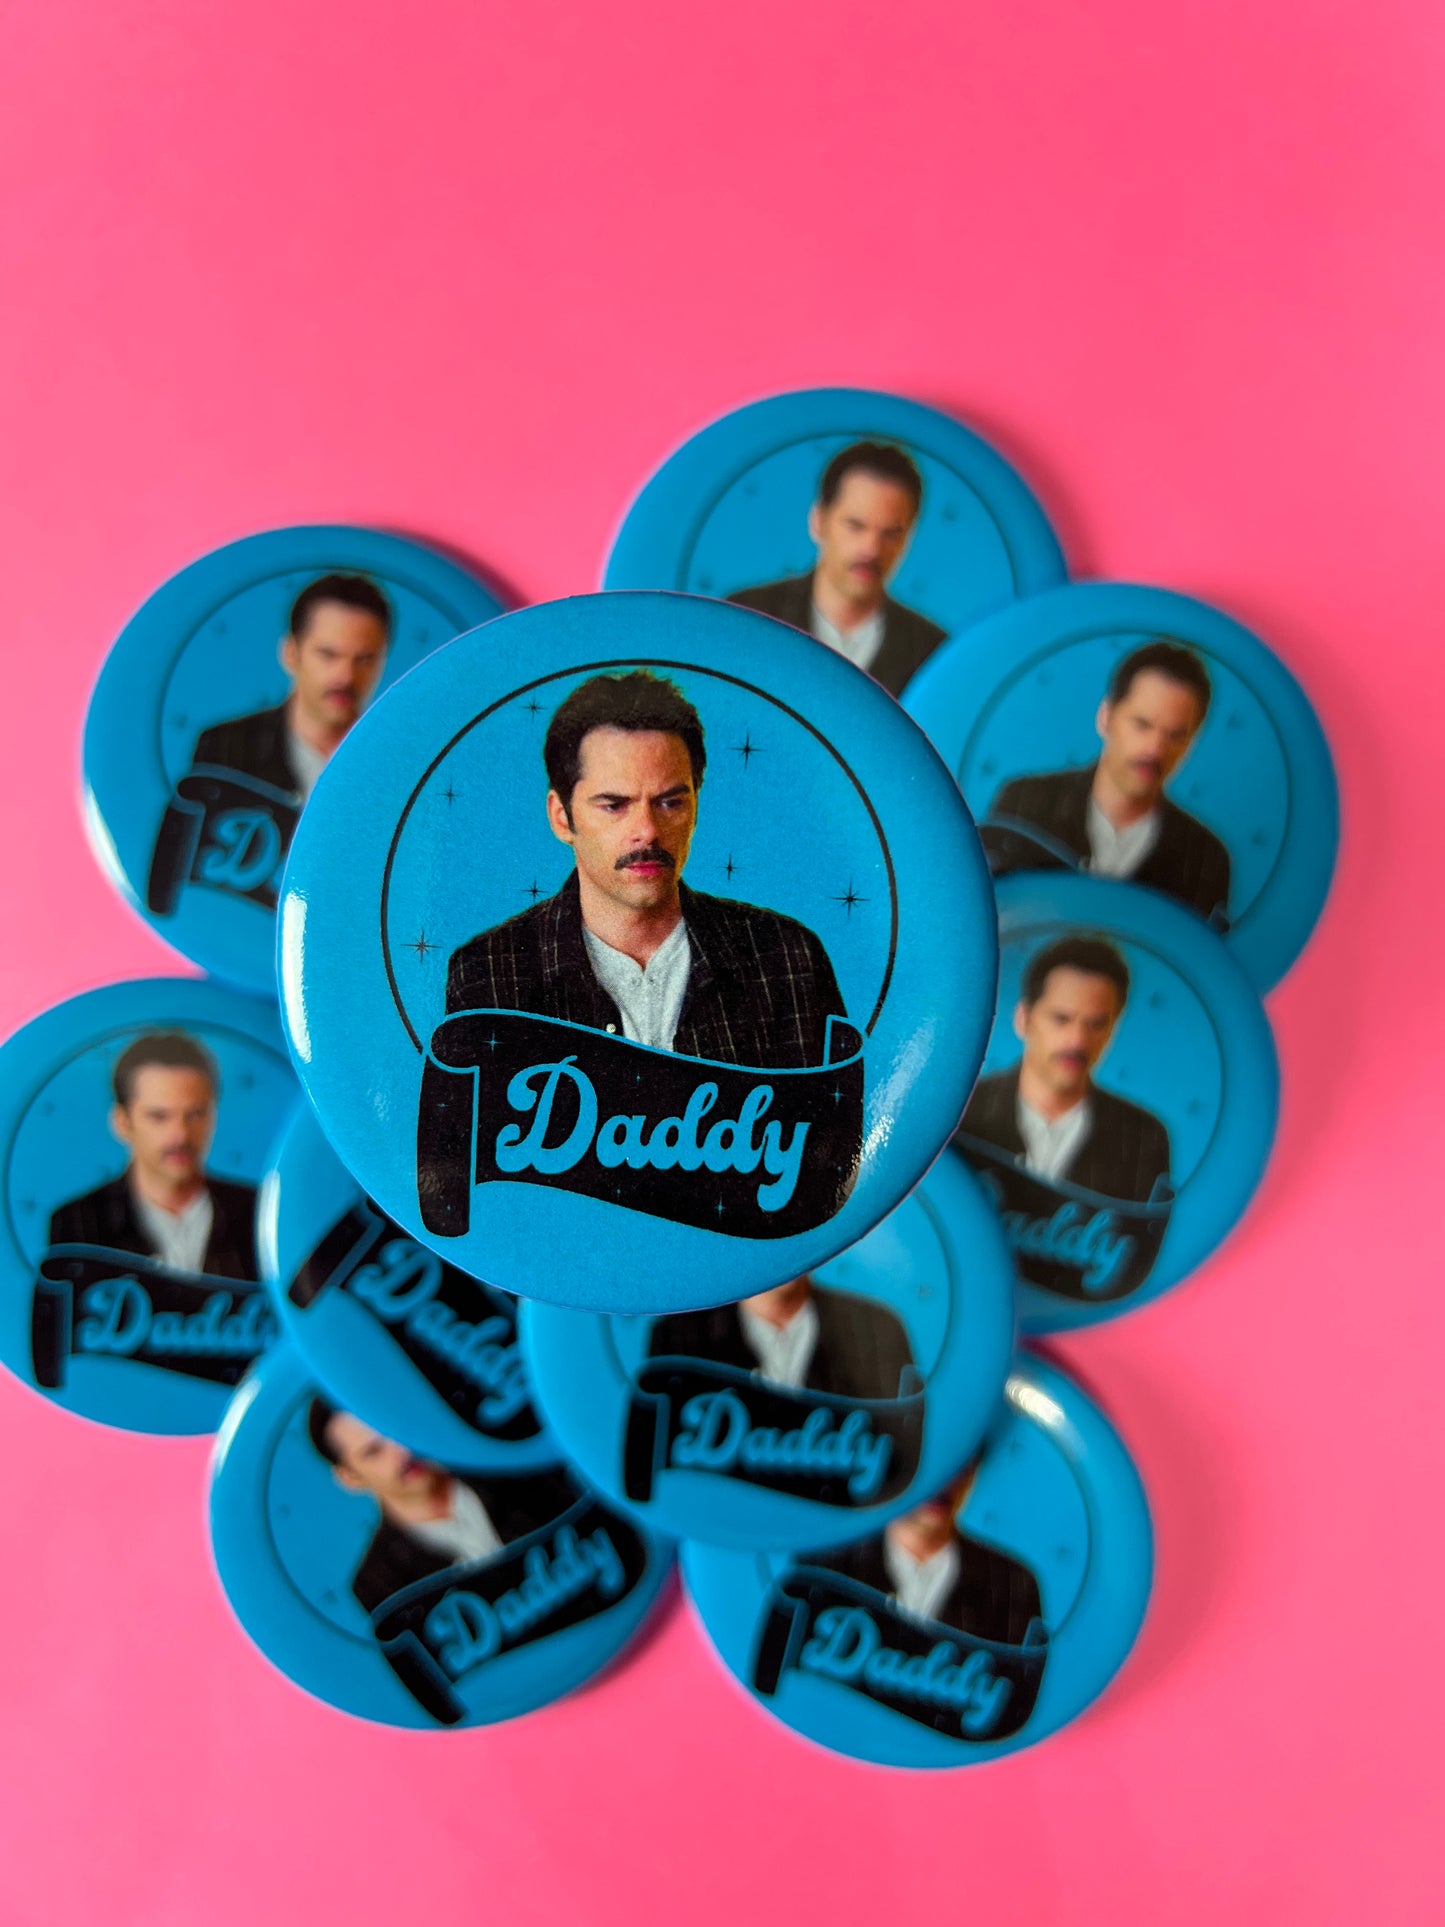 Bella's Daddy button